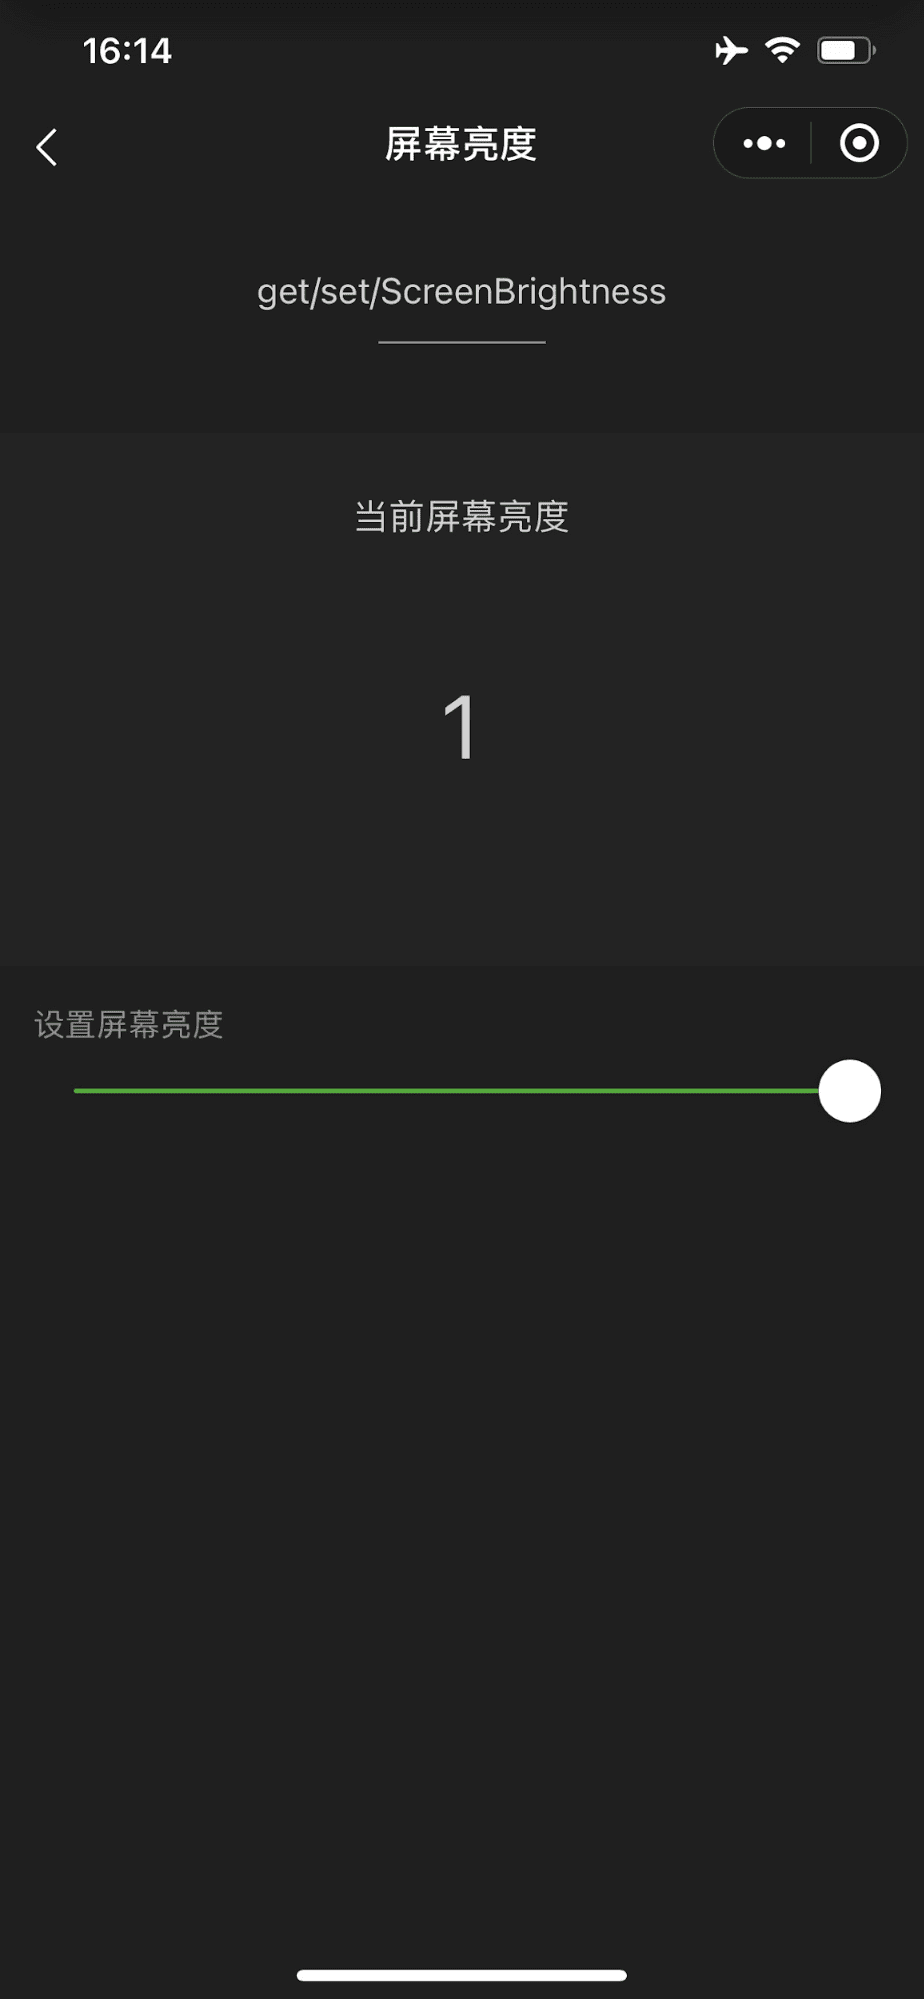 Aplikasi mini demo WeChat yang menampilkan penggeser yang mengontrol kecerahan layar perangkat yang dipindahkan sepenuhnya ke tingkat maksimum.